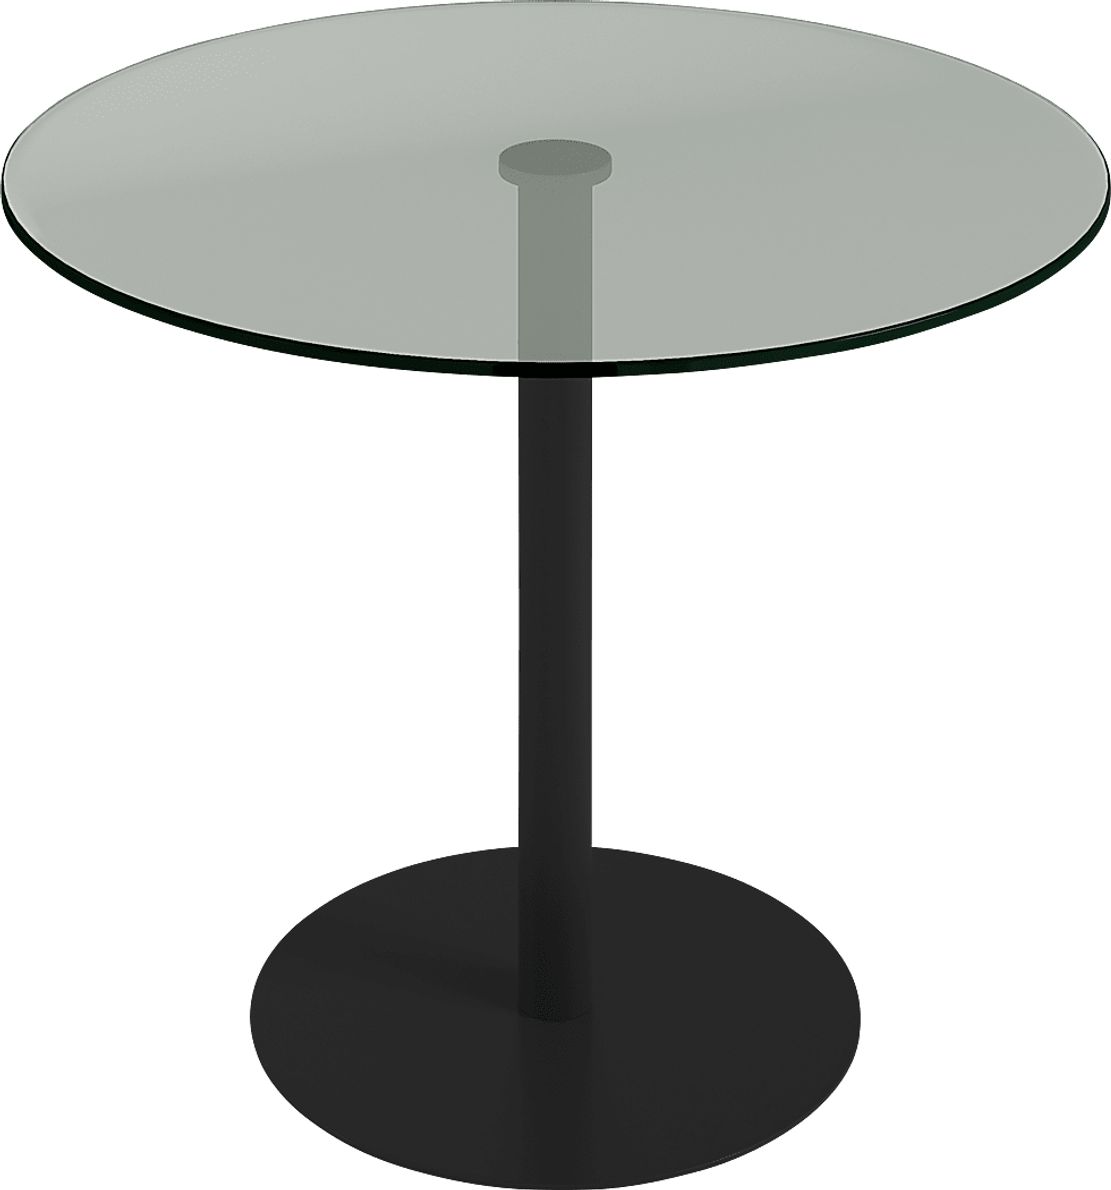 Letnes Black Bistro Table